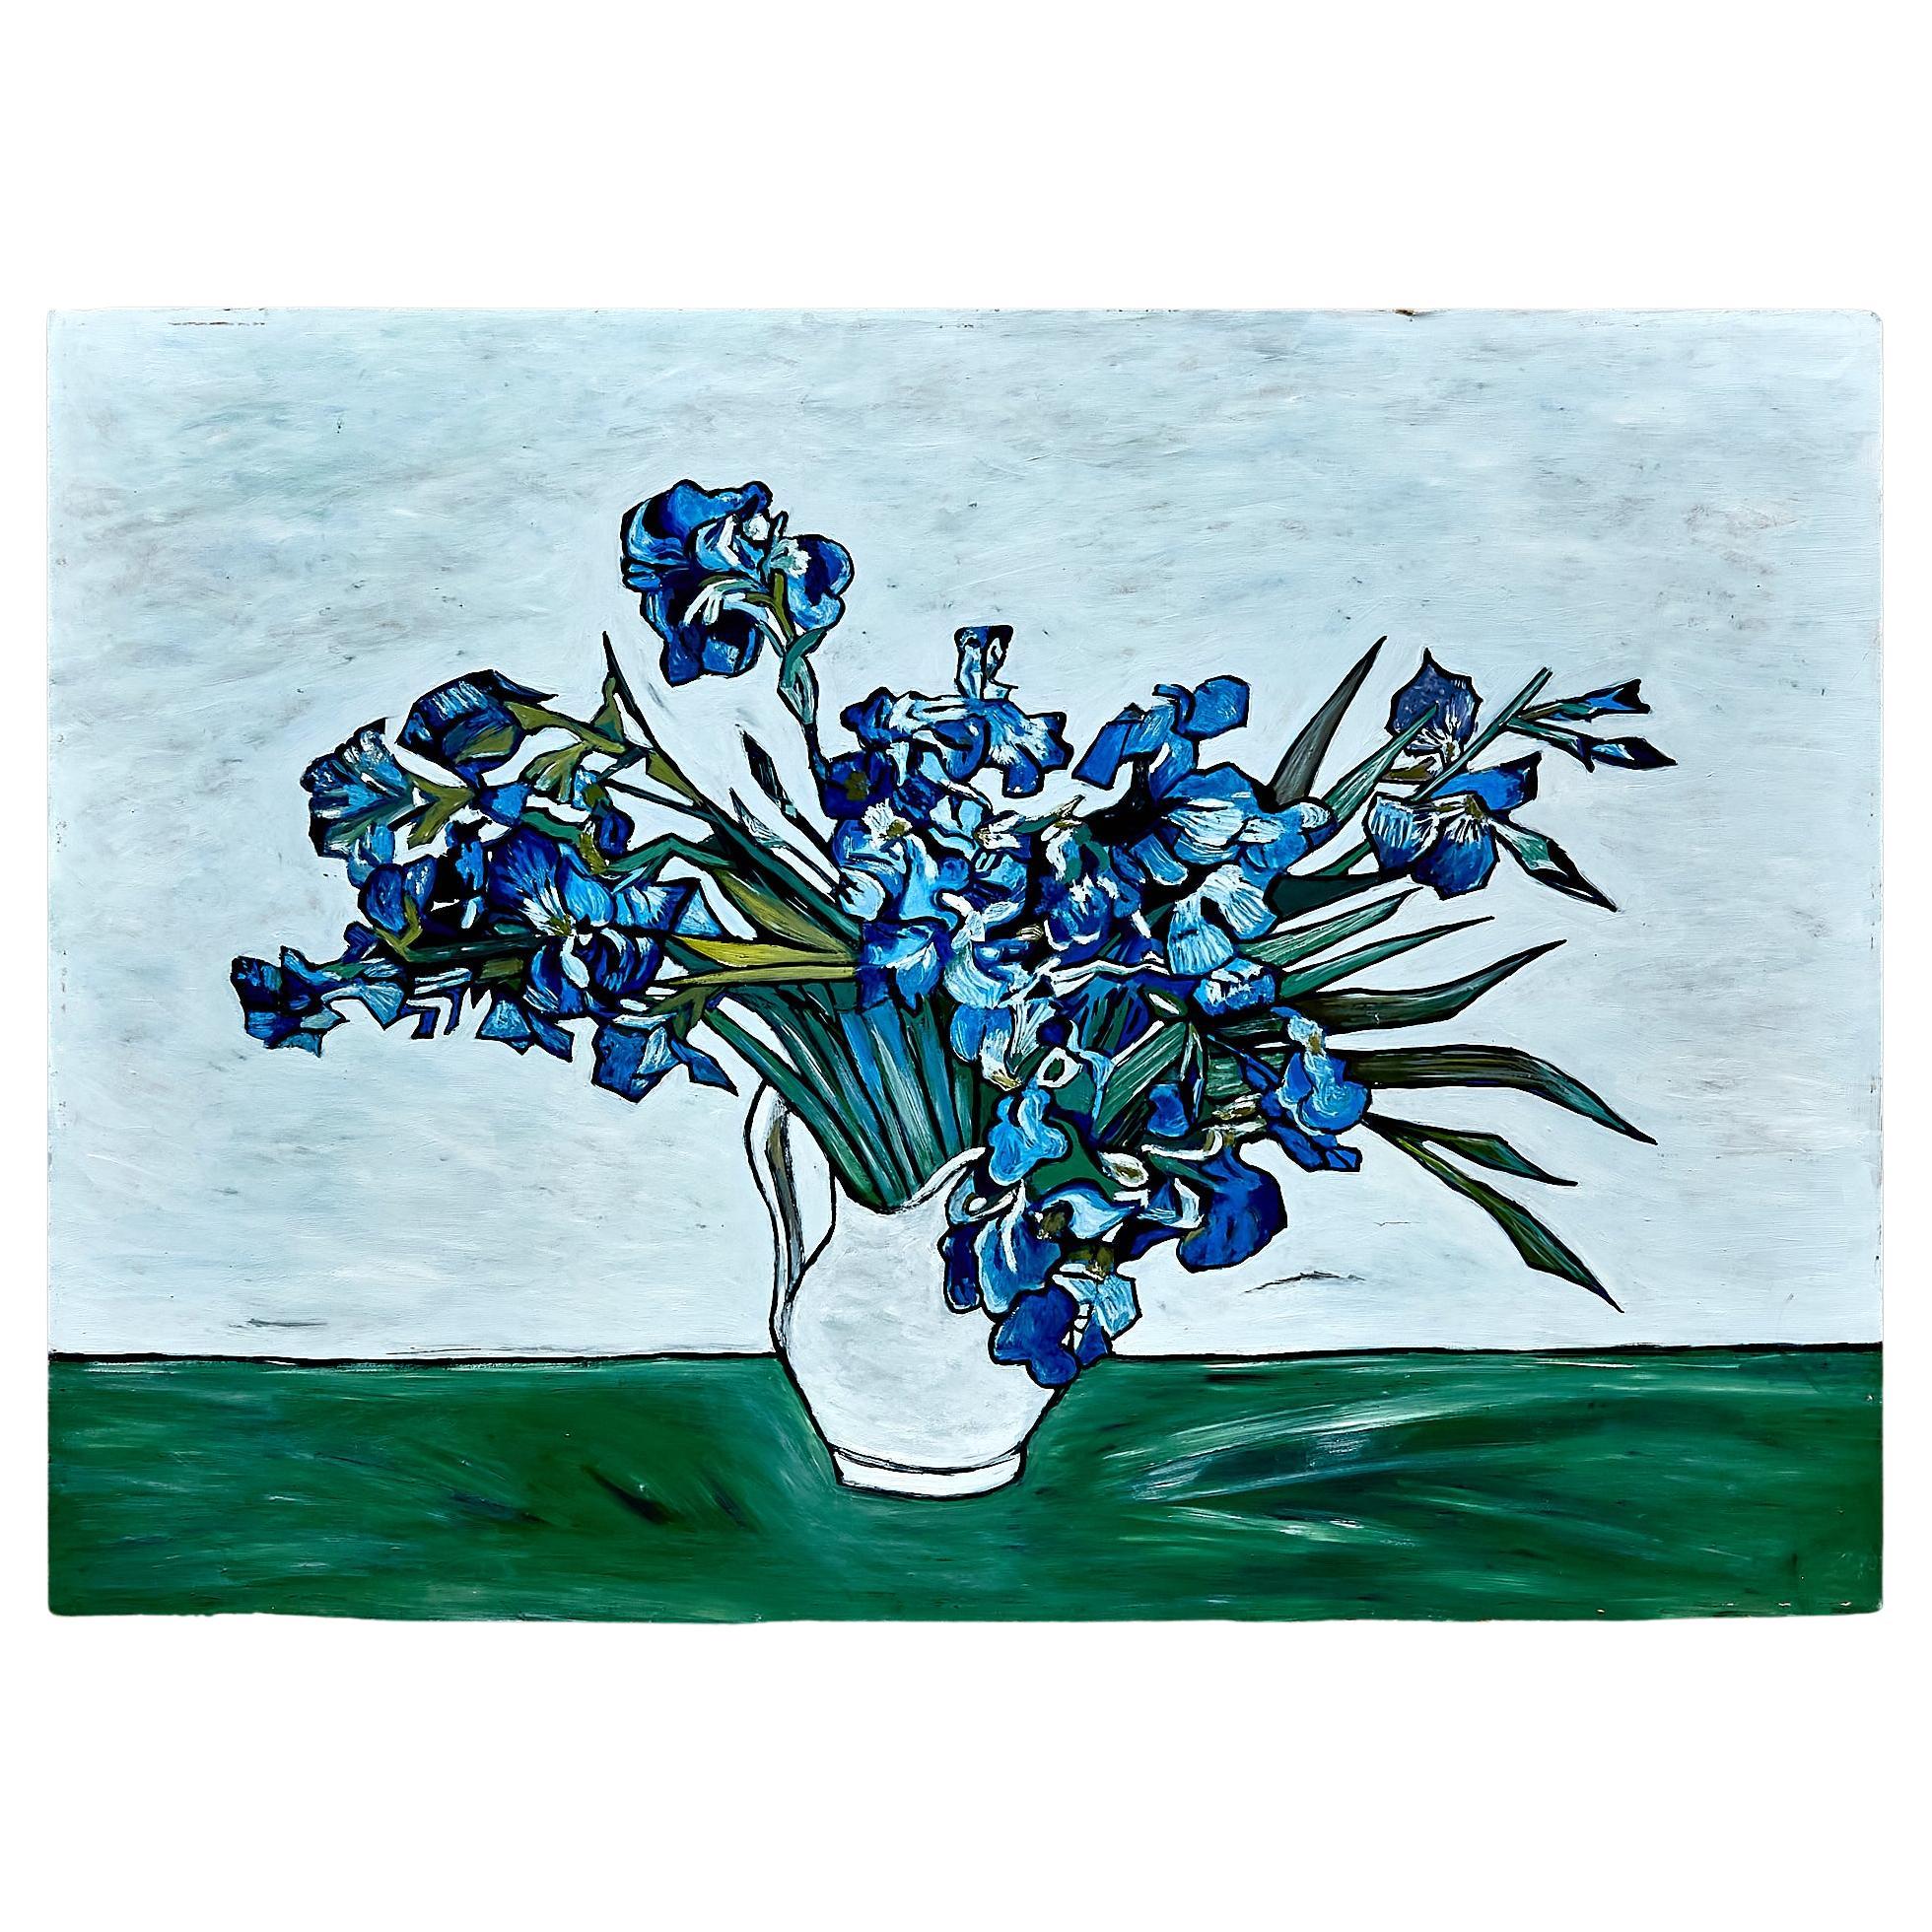 Gemälde im Stil von Van Gogh, ca. 2000.